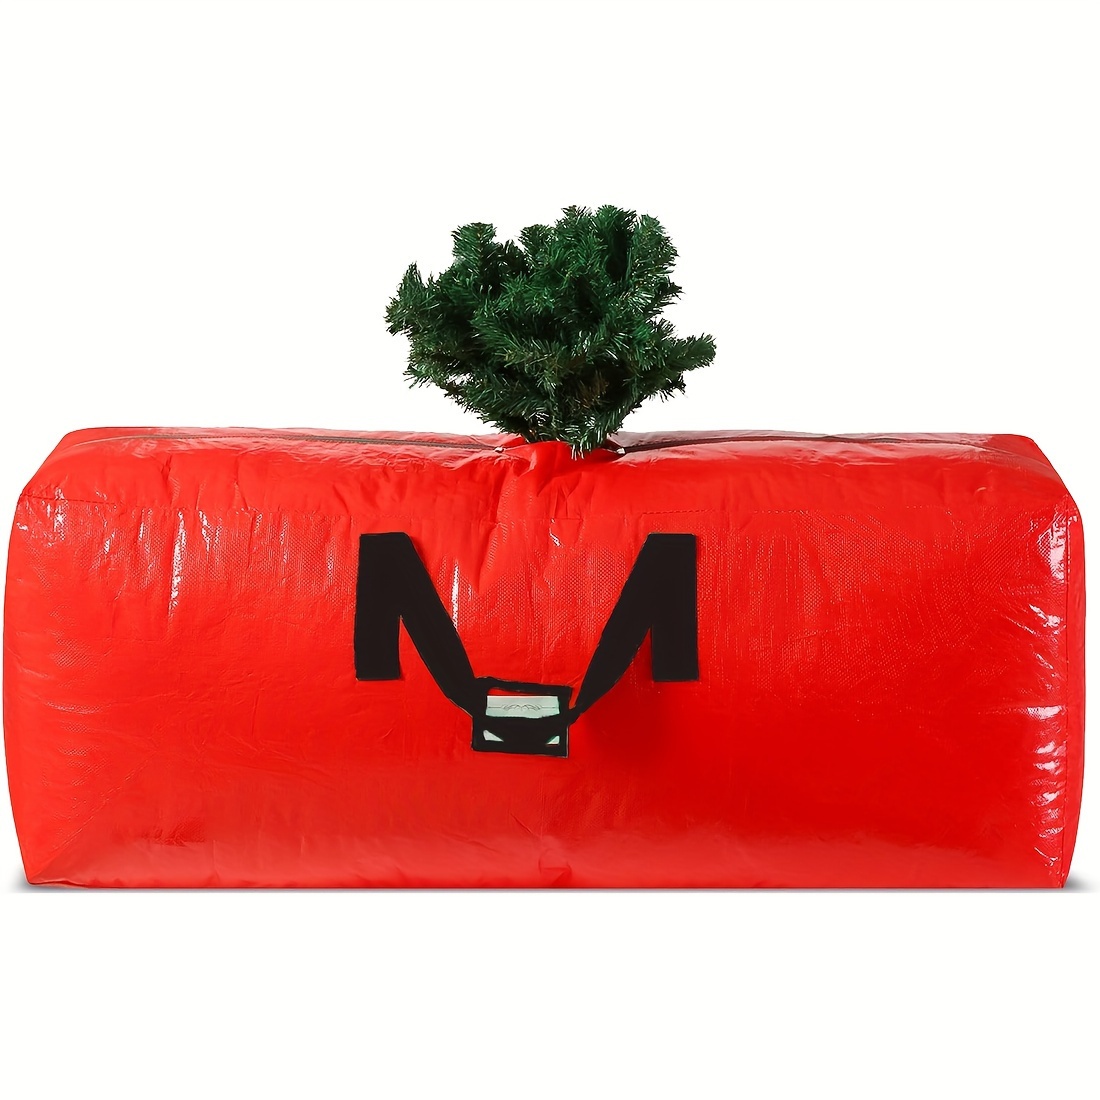  HOLIDAY SPIRIT Bolsa de almacenamiento para árbol de Navidad –  Bolsa resistente para árbol con asas reforzadas duraderas y cremallera,  bolsa de almacenamiento impermeable que protege de la humedad y 